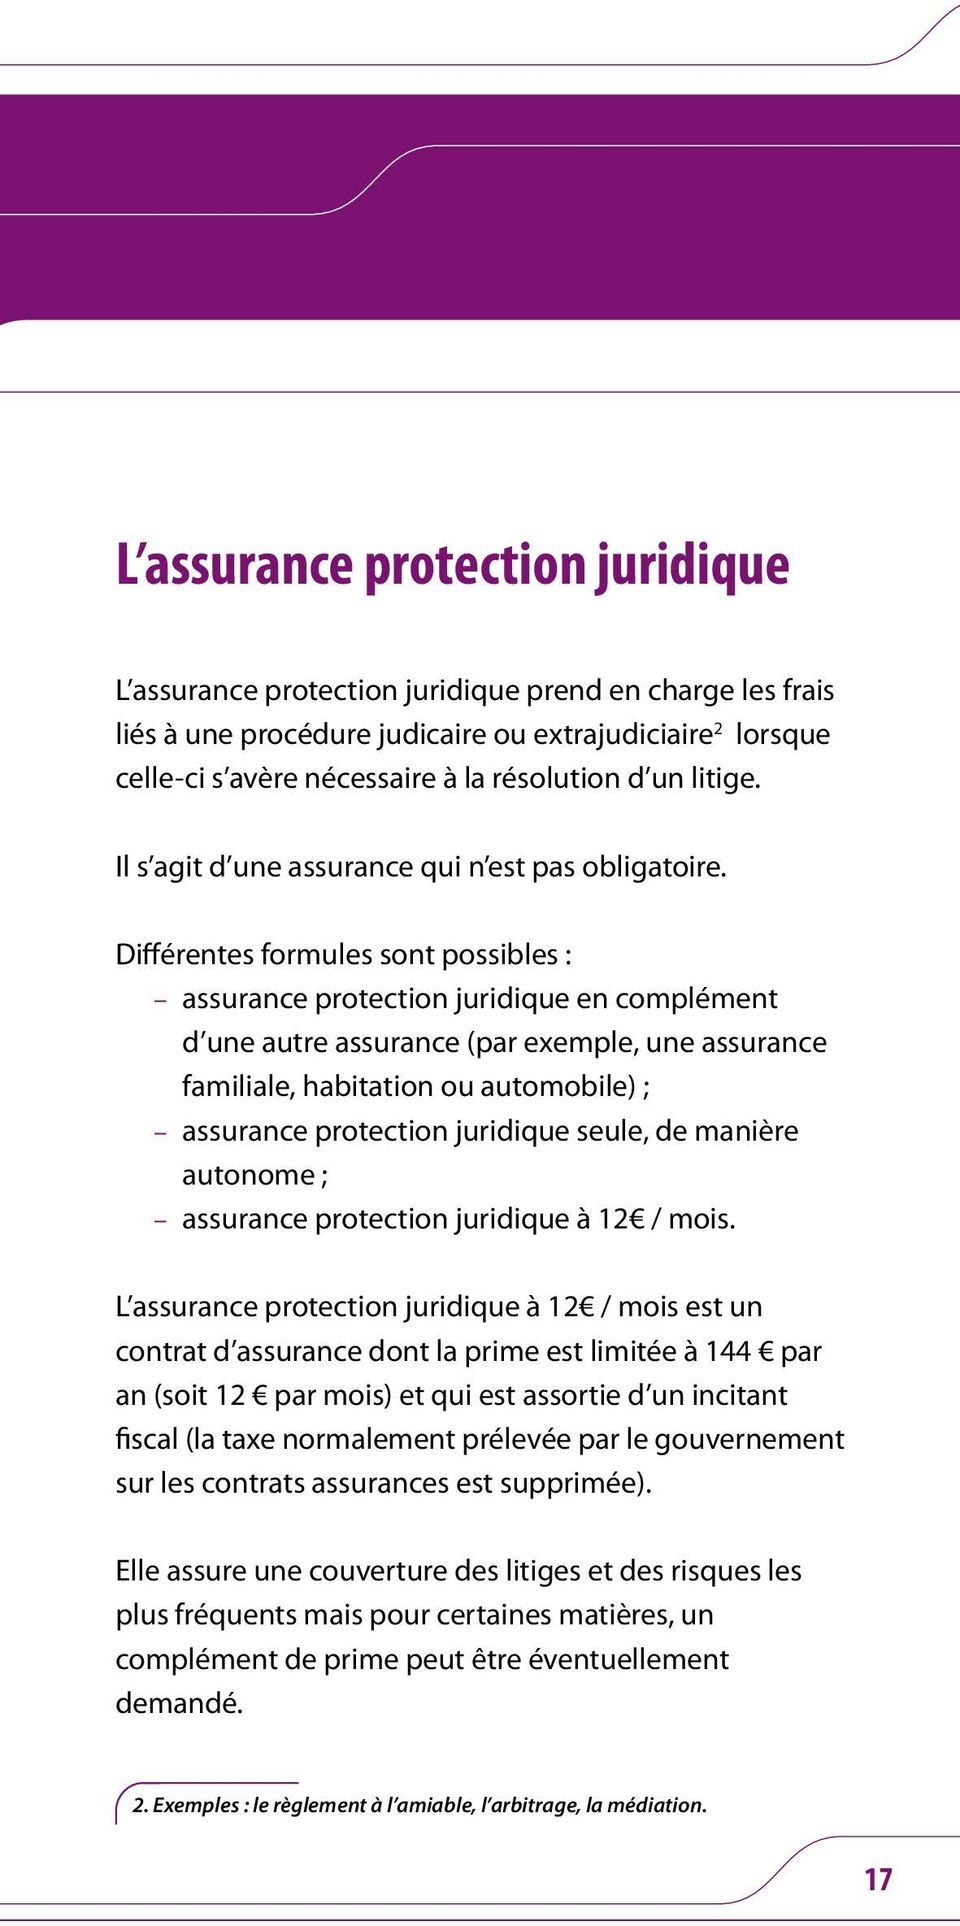 Différentes formules sont possibles : assurance protection juridique en complément d une autre assurance (par exemple, une assurance familiale, habitation ou automobile) ; assurance protection